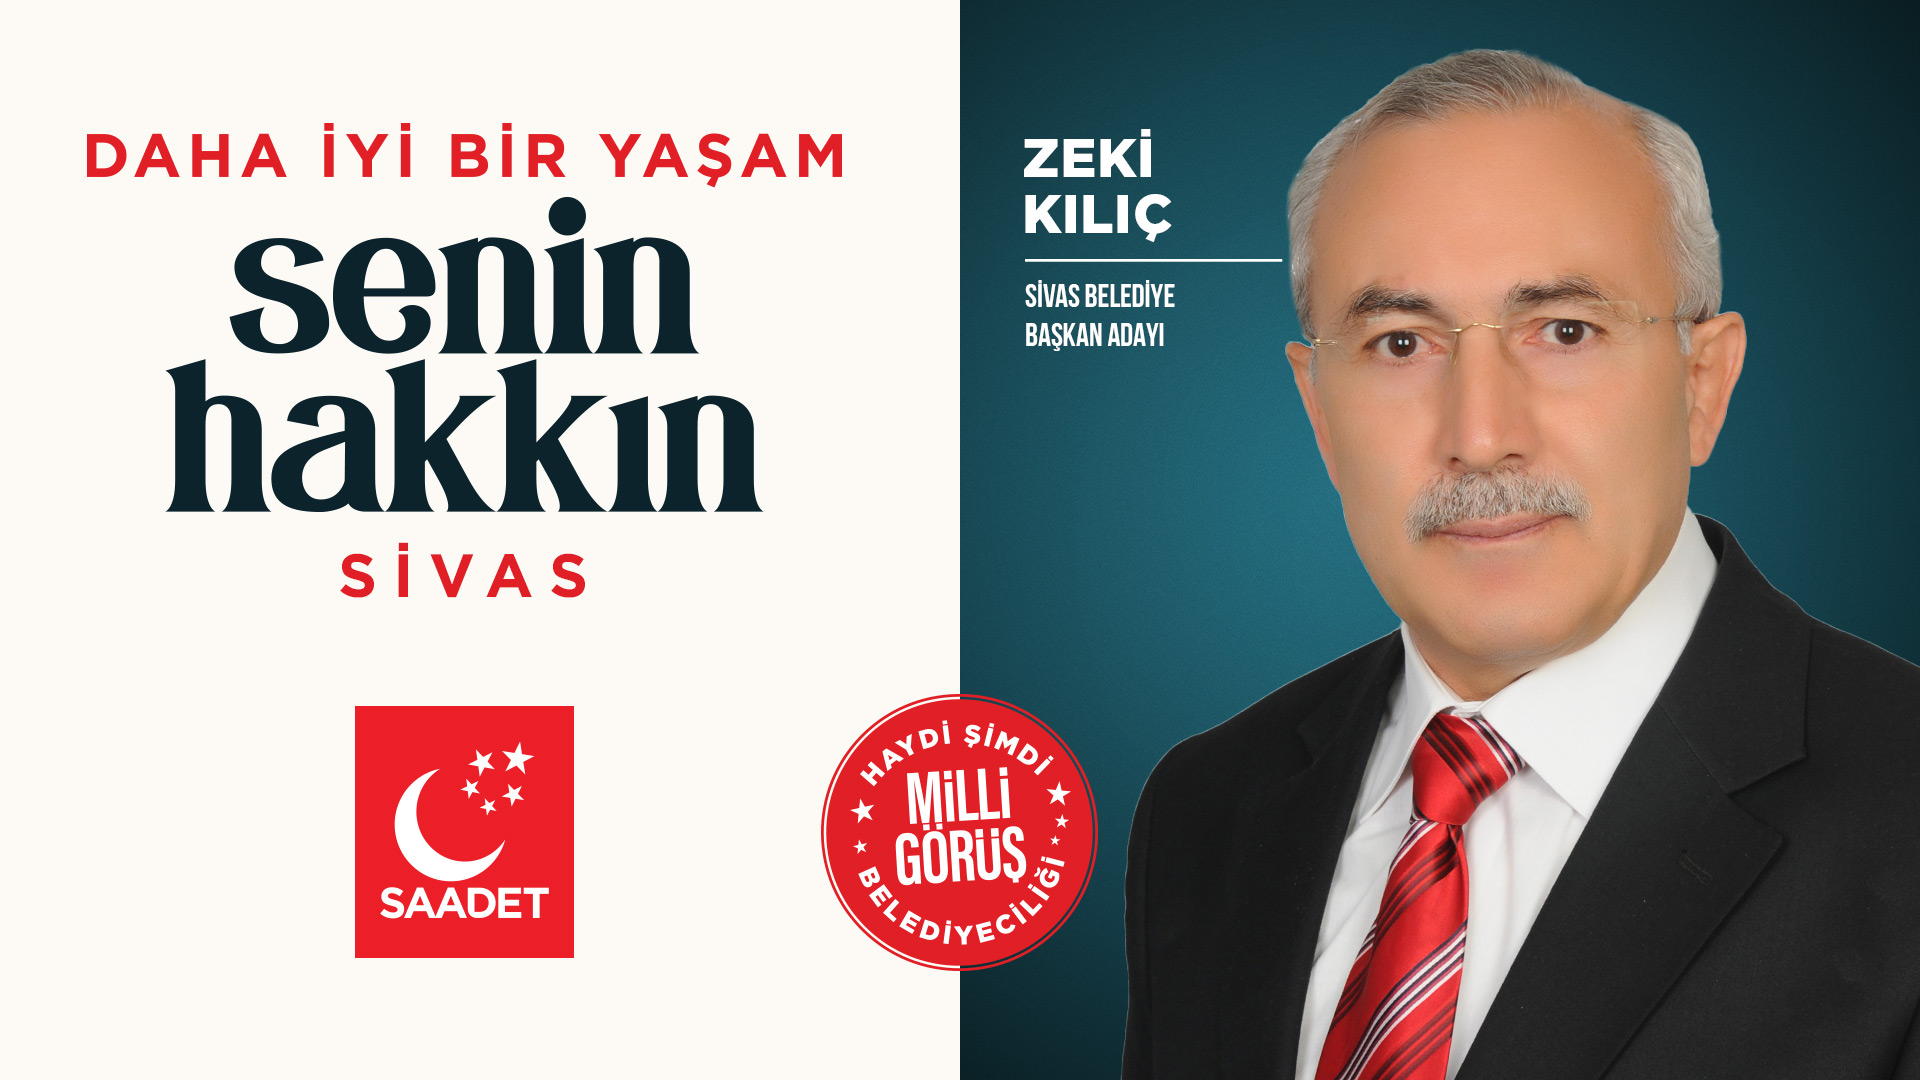 Saadet Partisi Zeki Kılıç'ı “Milli Görüş Belediyeciliği” anlayışıyla Sivas Belediye Başkanlığı için aday gösterdi.